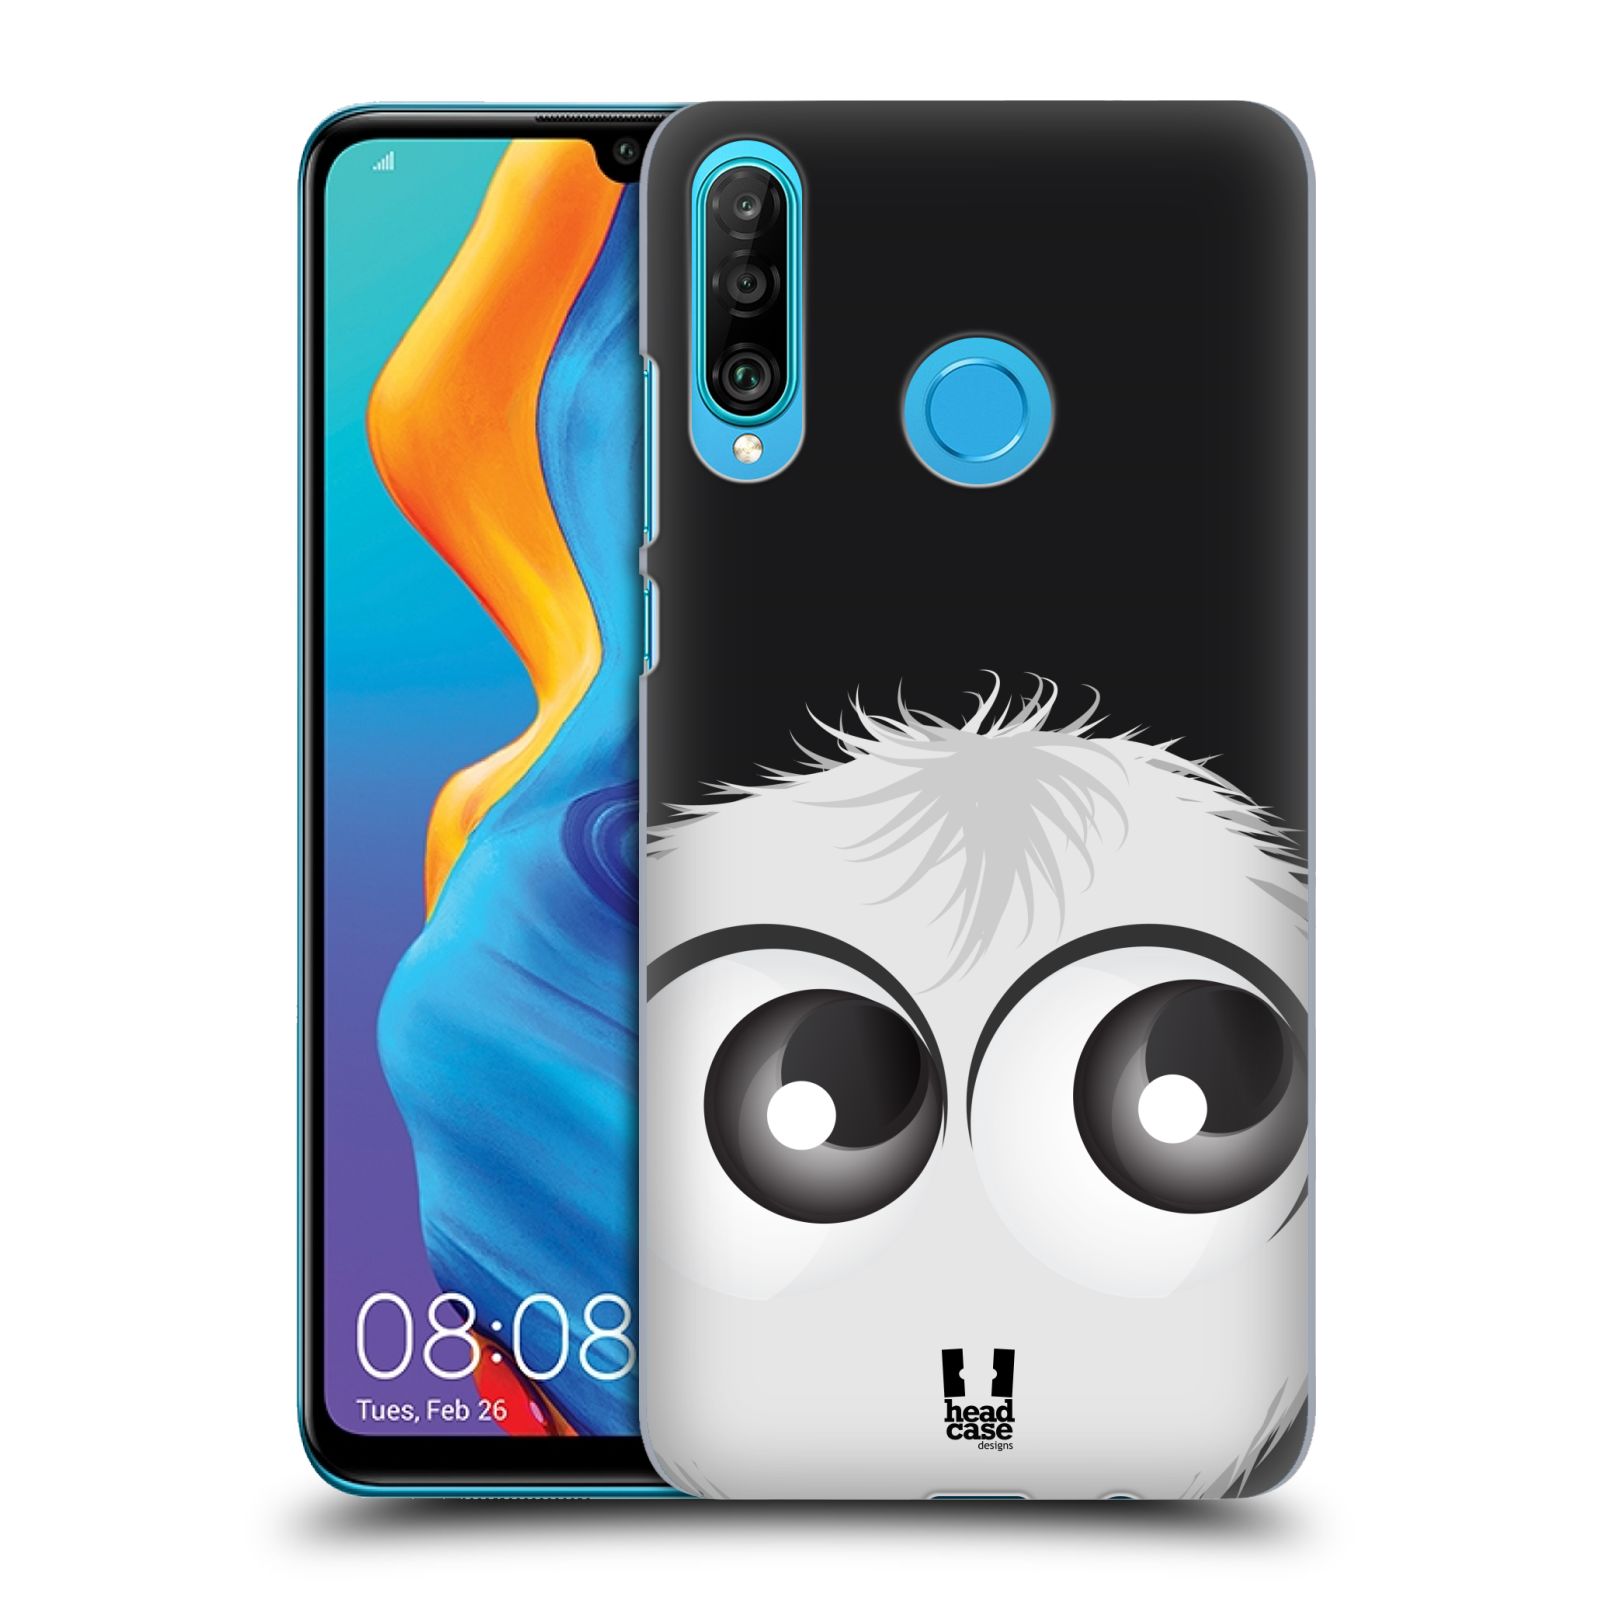 Pouzdro na mobil Huawei P30 LITE - HEAD CASE - vzor Barevný chlupatý smajlík BÍLÁ černé pozadí